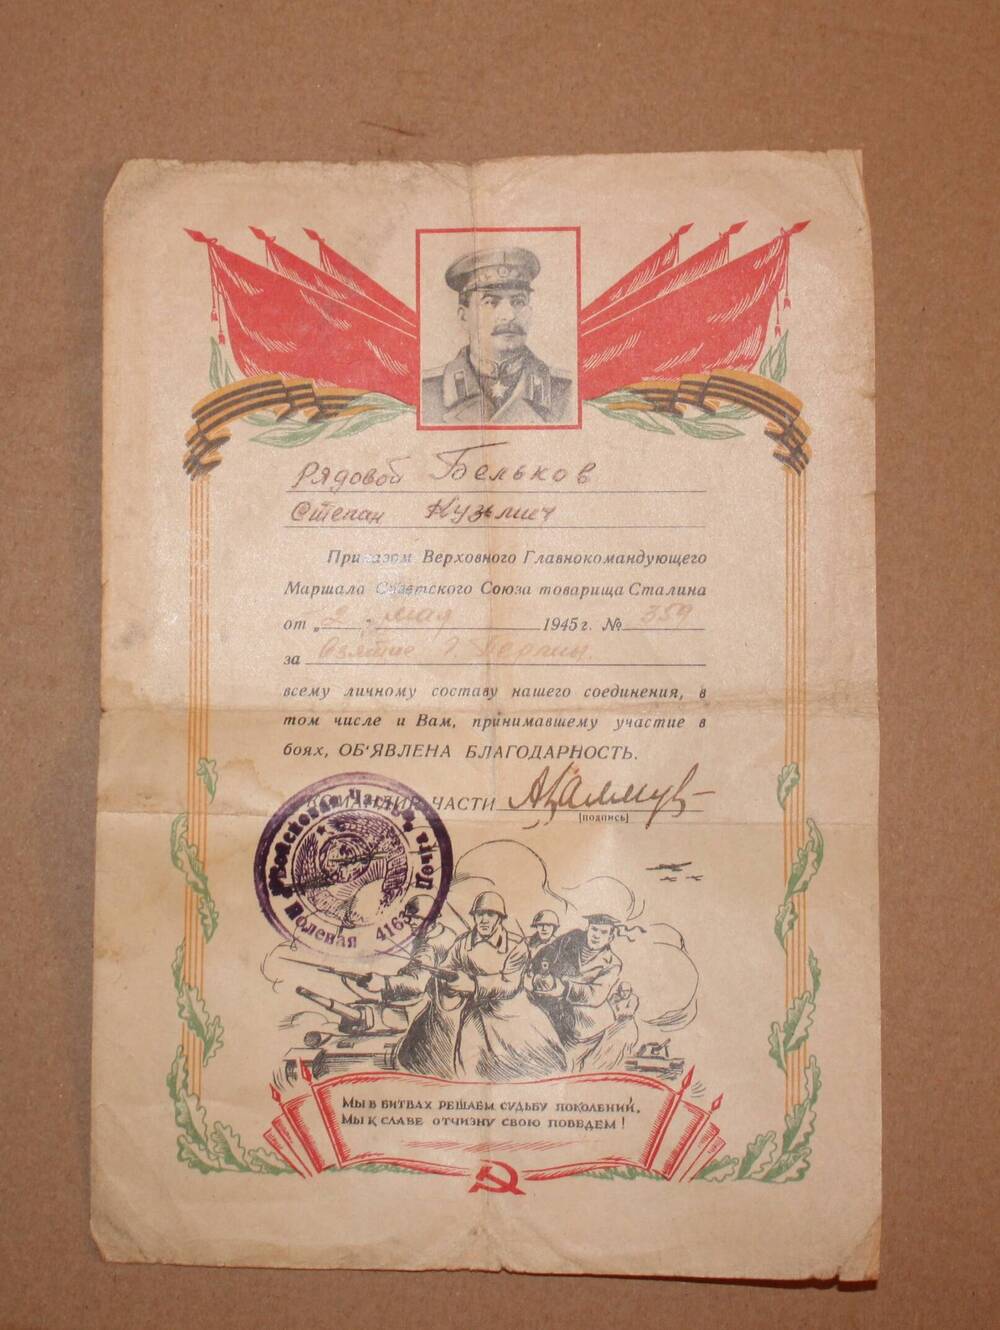 Благодарность, объявленная приказом  Верховного Главнокомандующего Маршала СССР т. Сталина  от 9 мая 1945 г.№359 рядовому Белькову С.К.